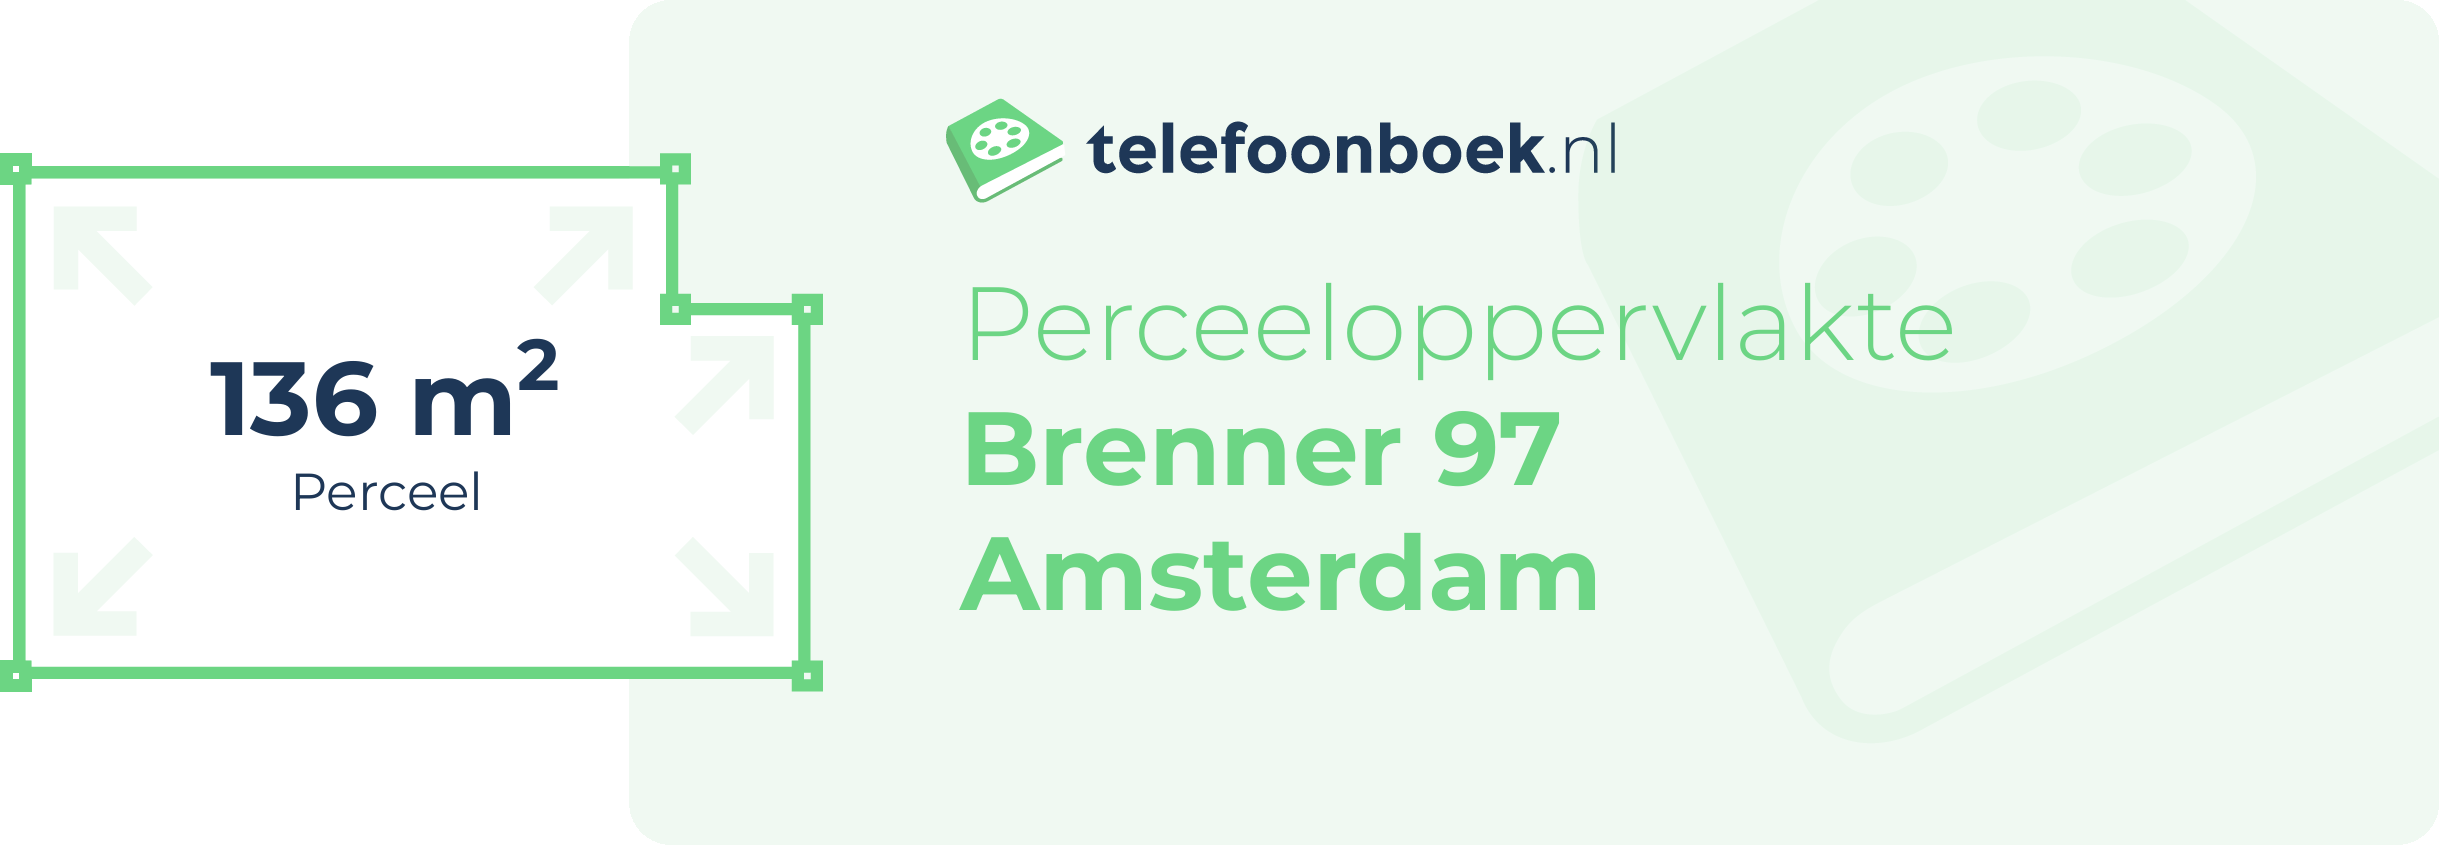 Perceeloppervlakte Brenner 97 Amsterdam